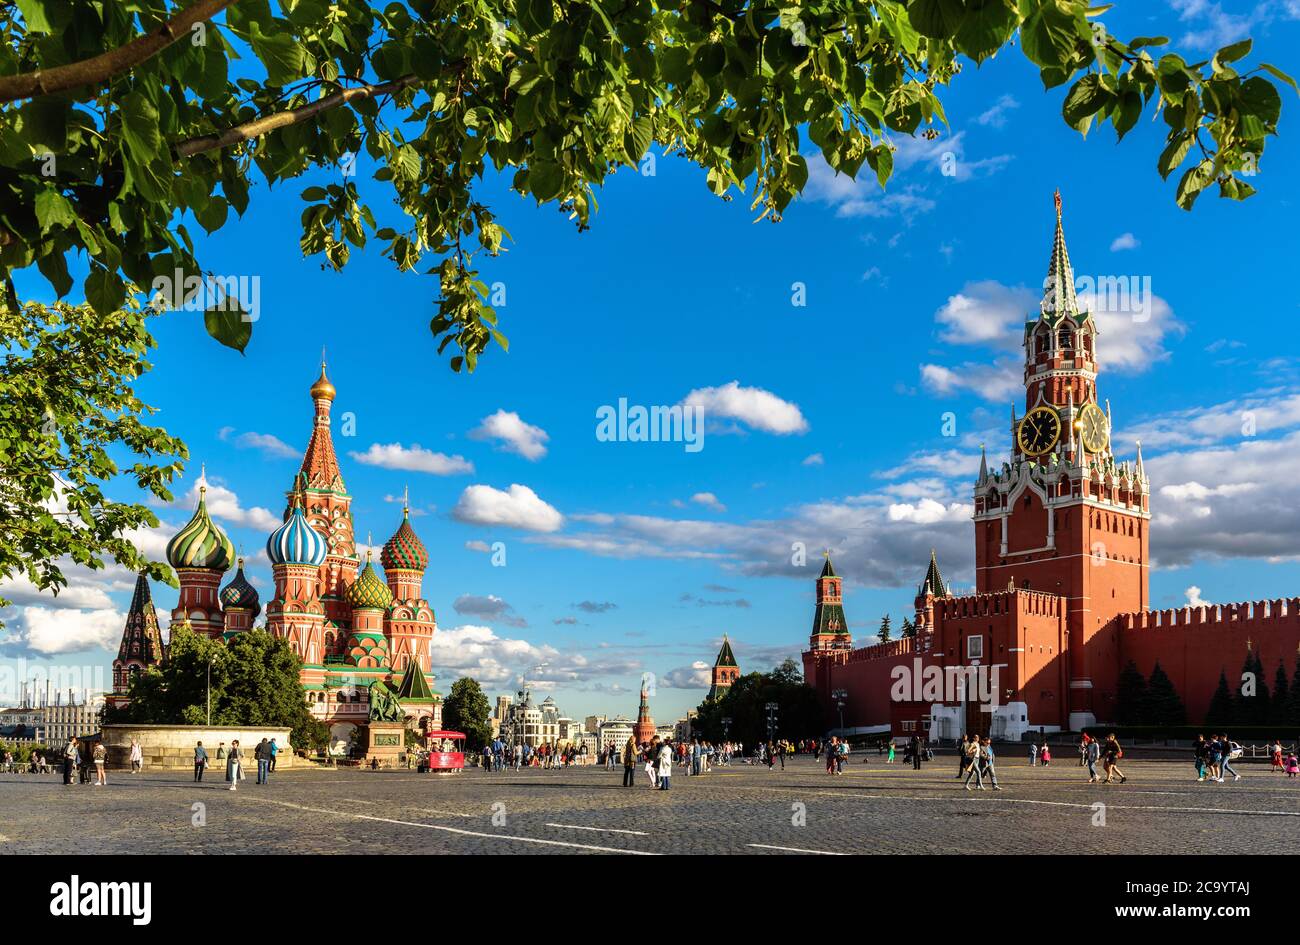 Mosca - 23 luglio 2020: Cattedrale di San Basilio`s e Cremlino sulla Piazza Rossa a Mosca, Russia. Questo luogo è famosa attrazione turistica di Mosca, Top Russi Foto Stock